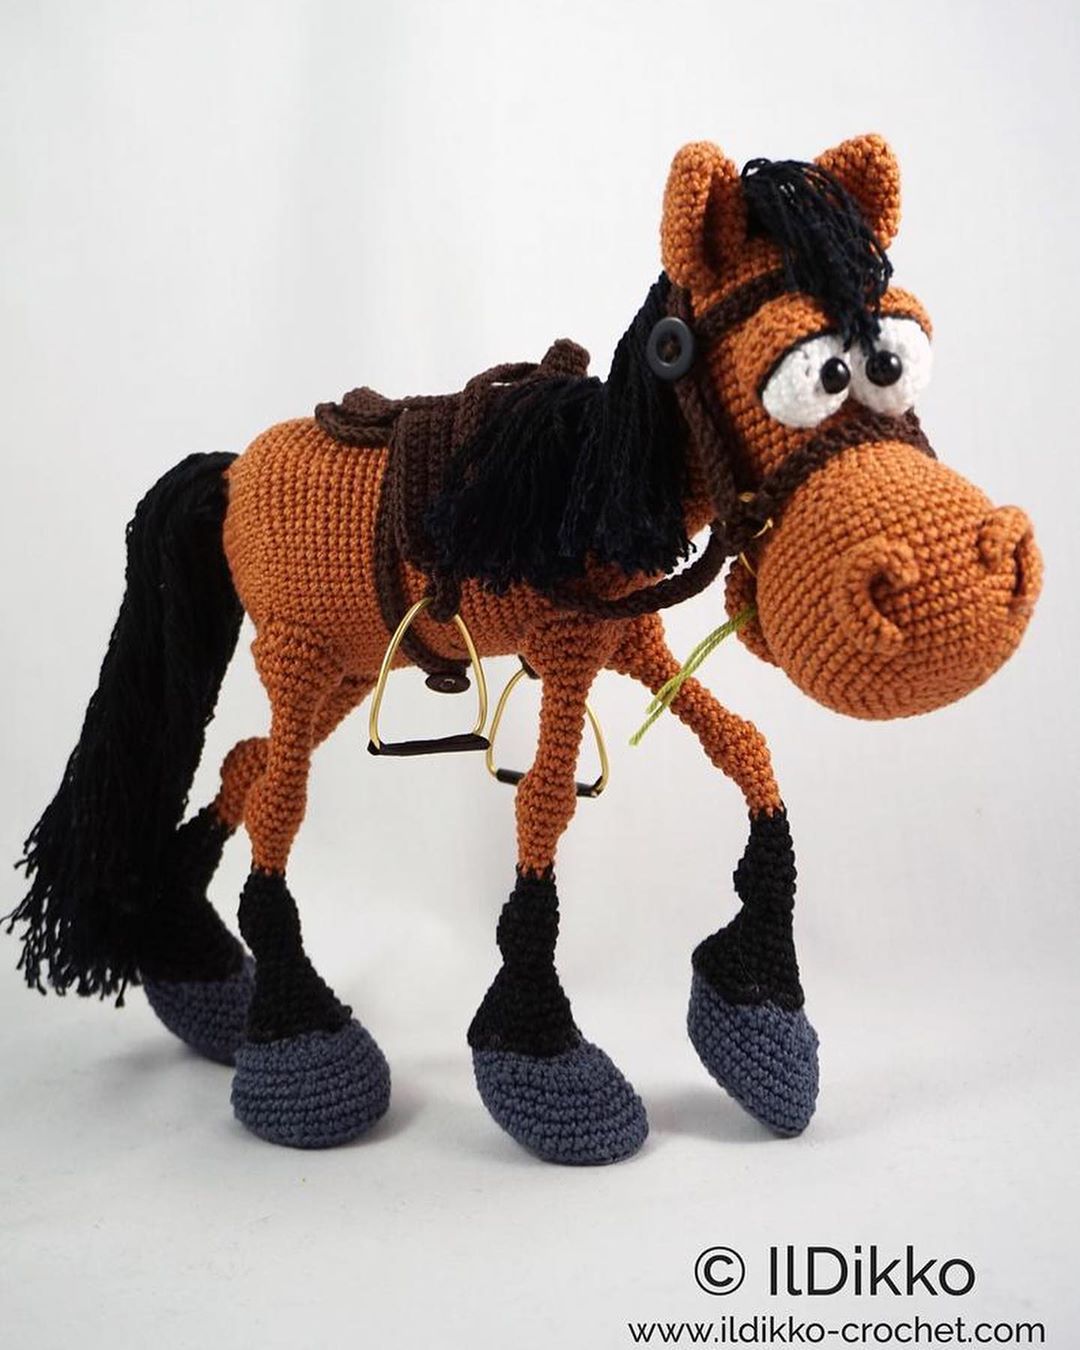 Лошадь крючком амигуруми: Амигуруми лошадь крючком: пошаговая схема вязания